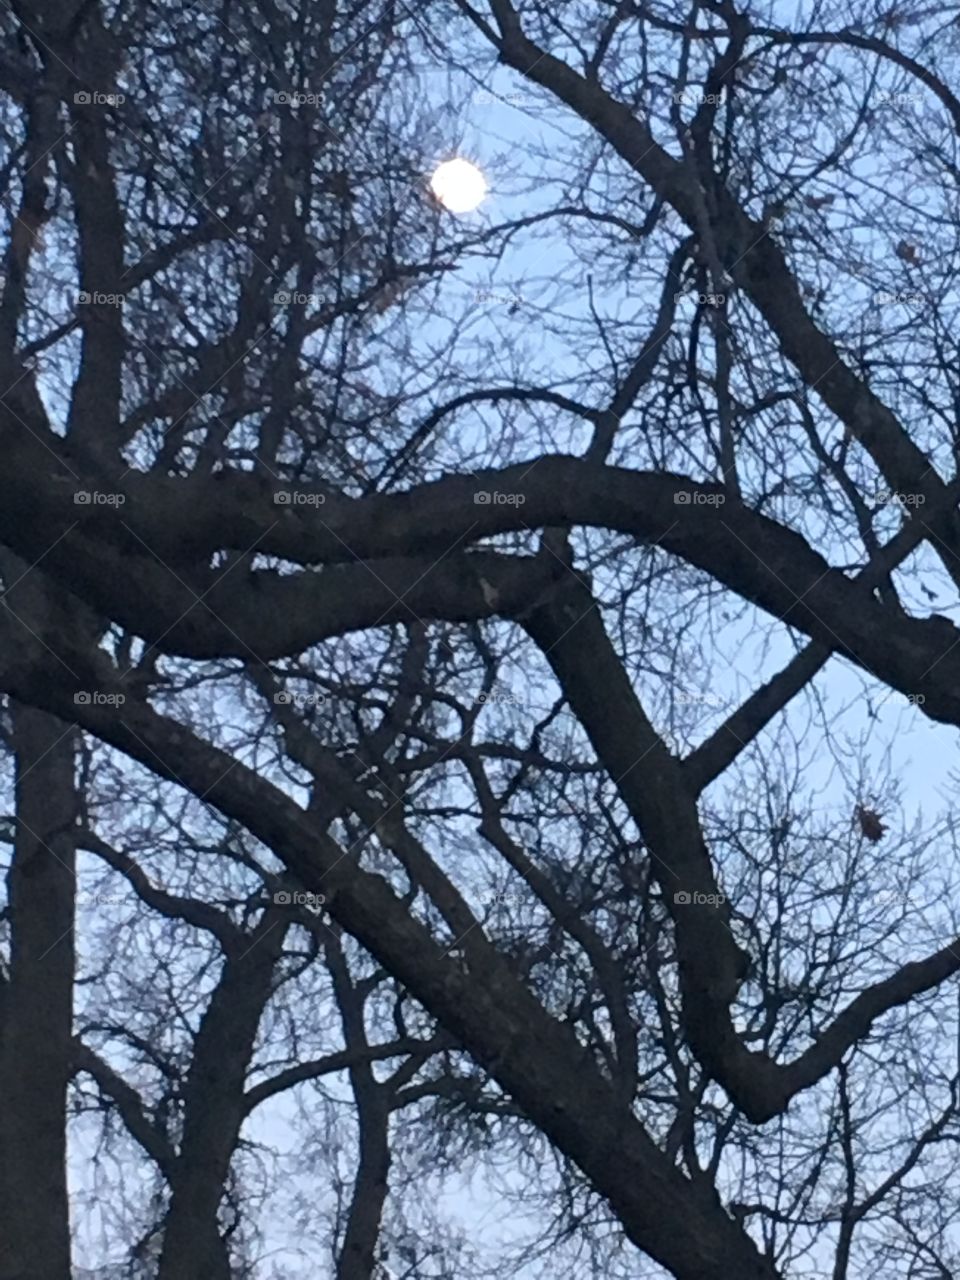 Moon through branches